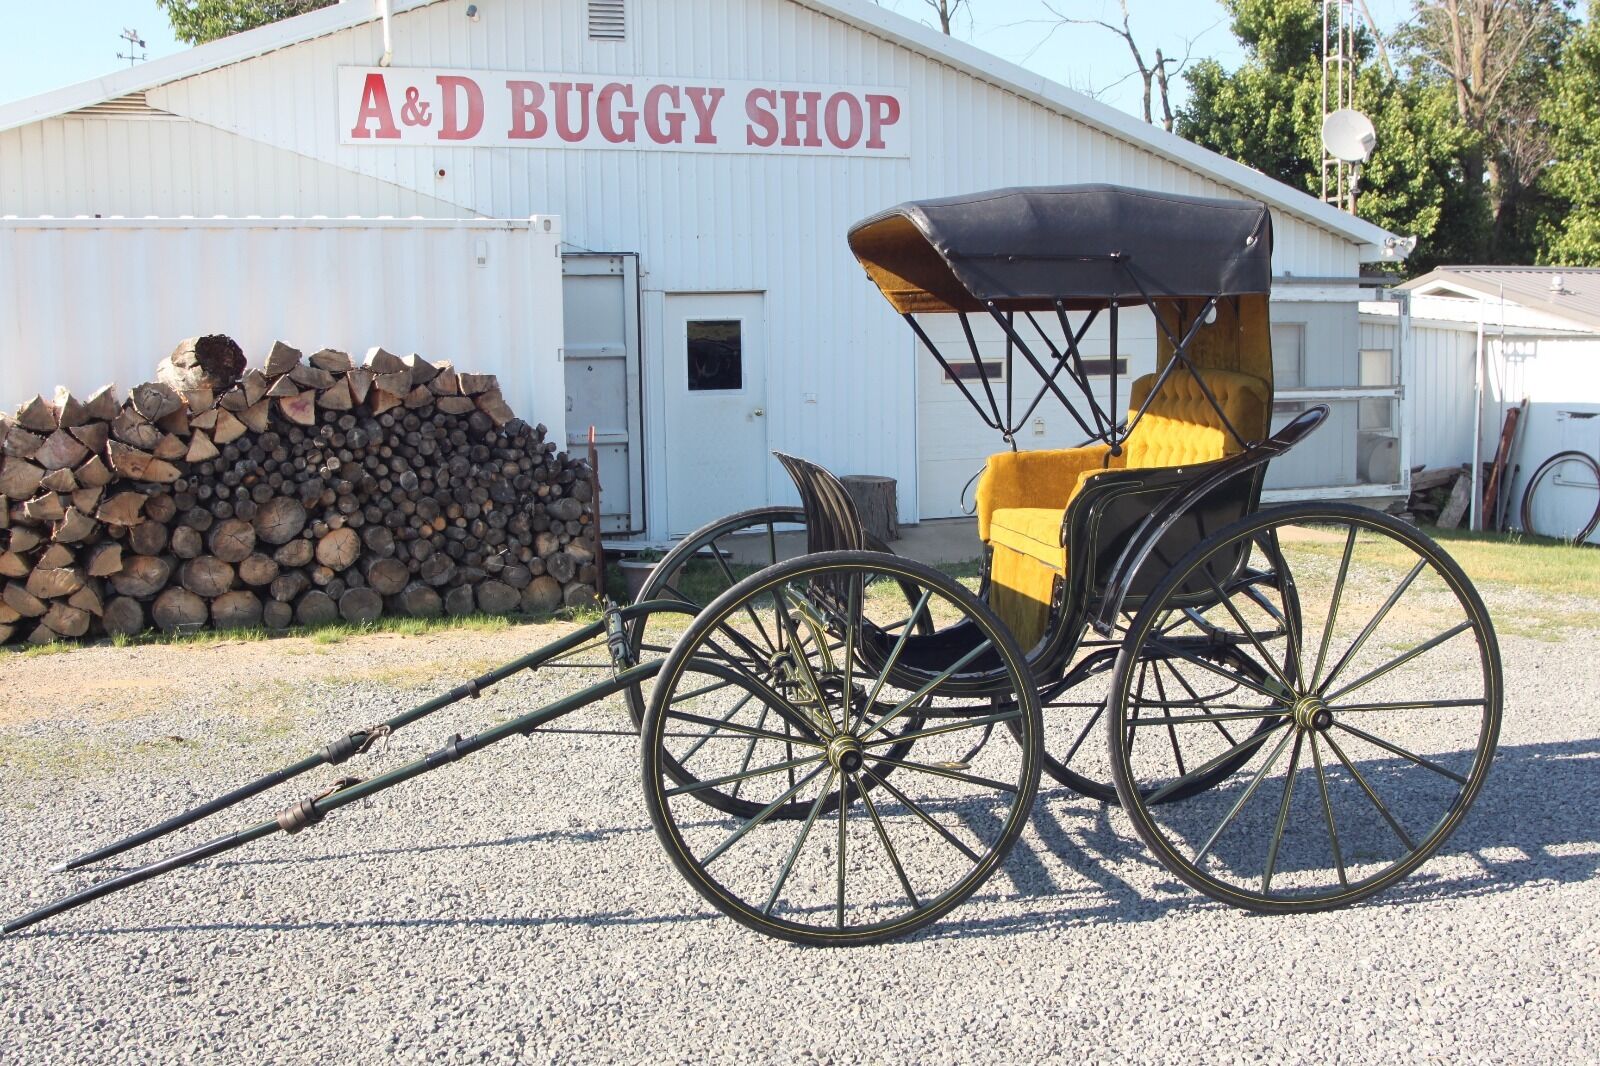 Horse Drawn Phaeton Carriage Wagon Buggy Sleigh Cart Antique